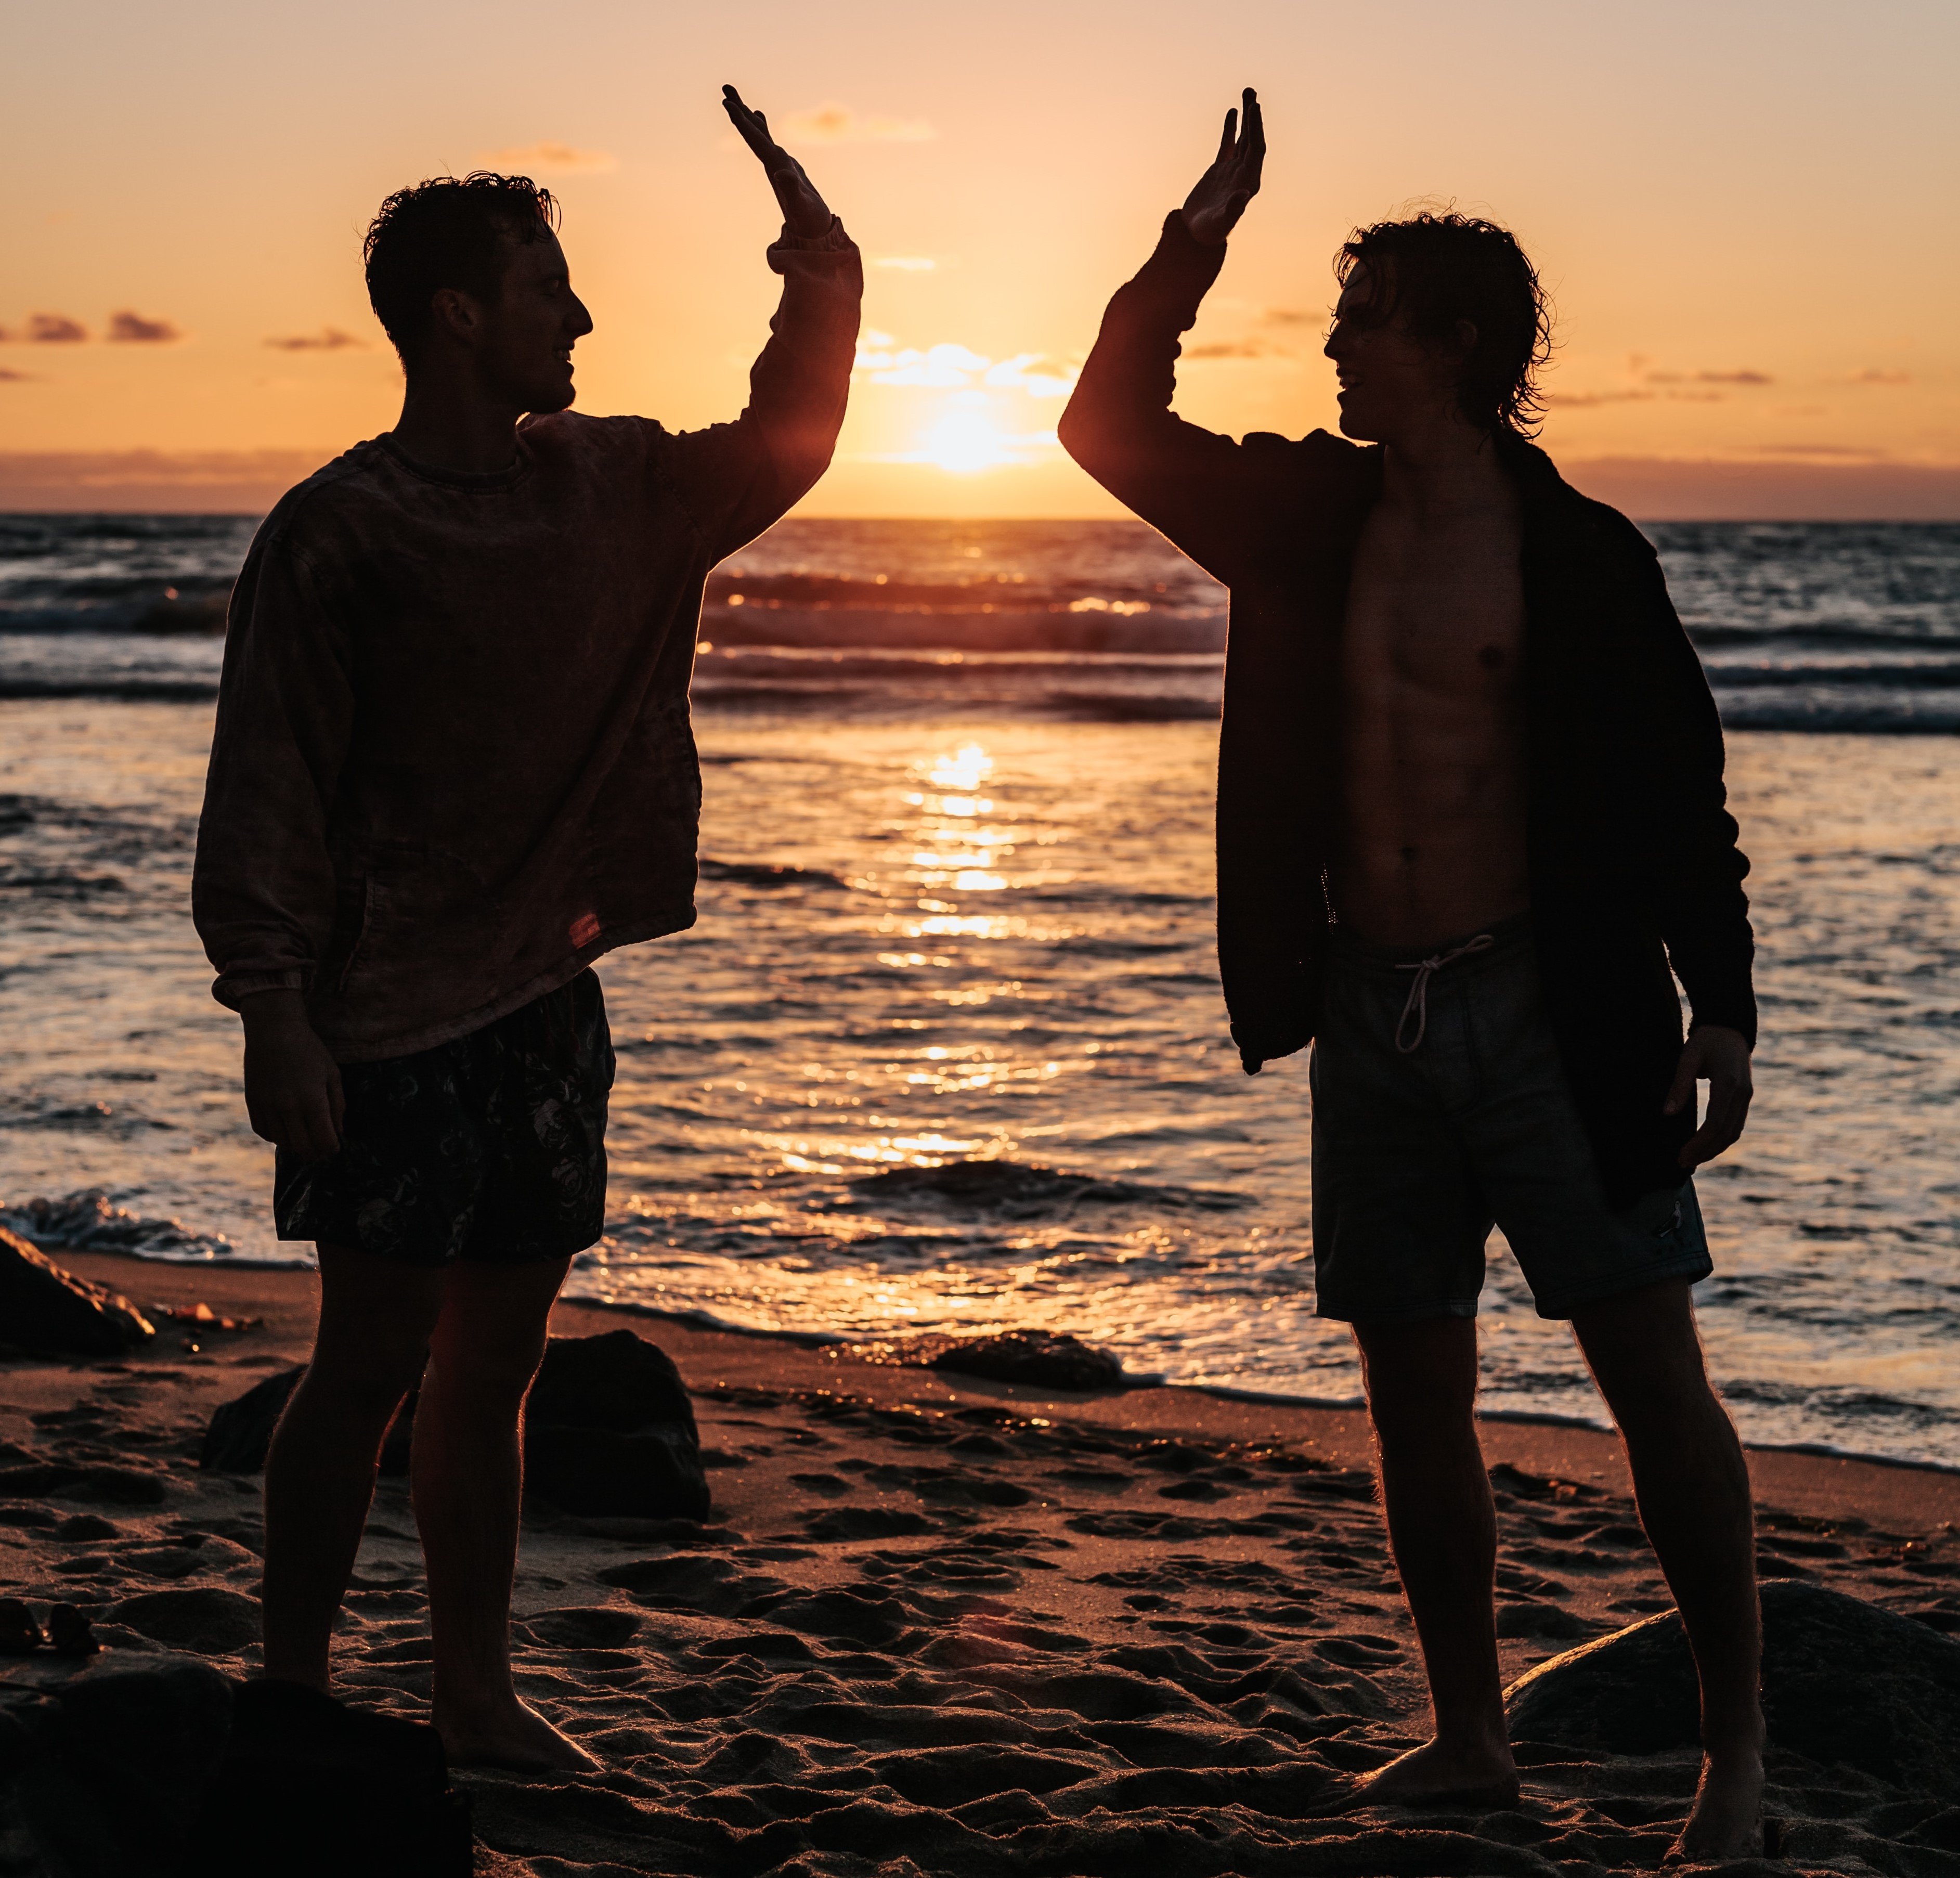 Dois homens na praia com o por do sol batendo as mãos